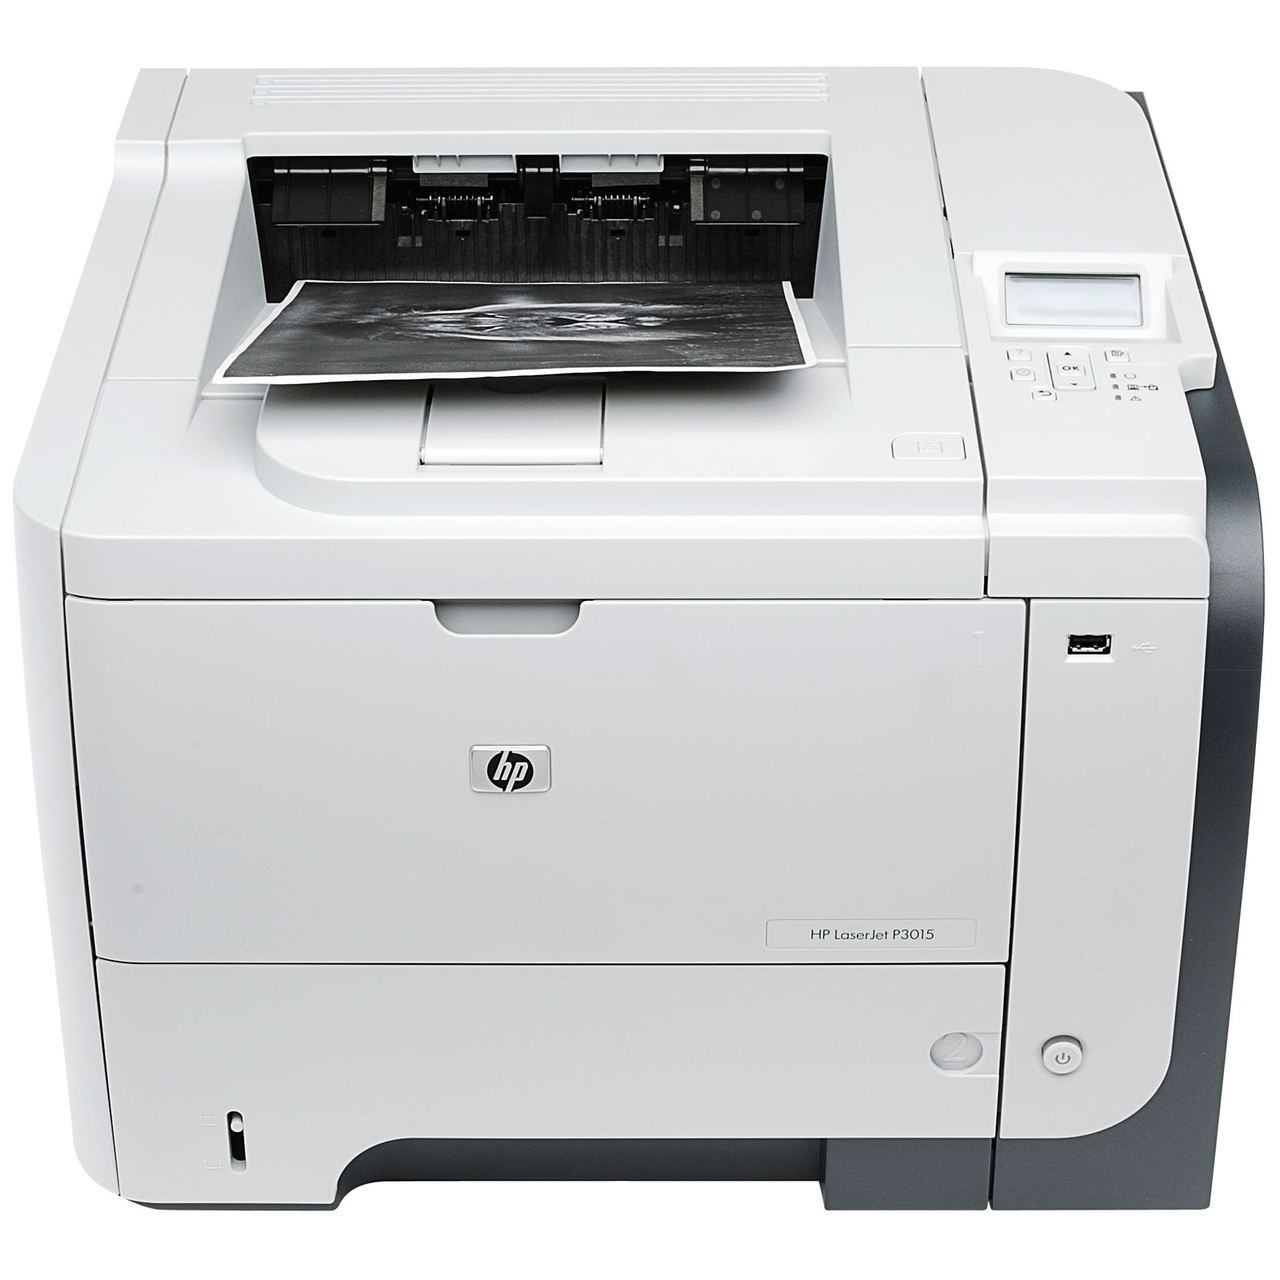 hp laserjet p2055dn printer pdf